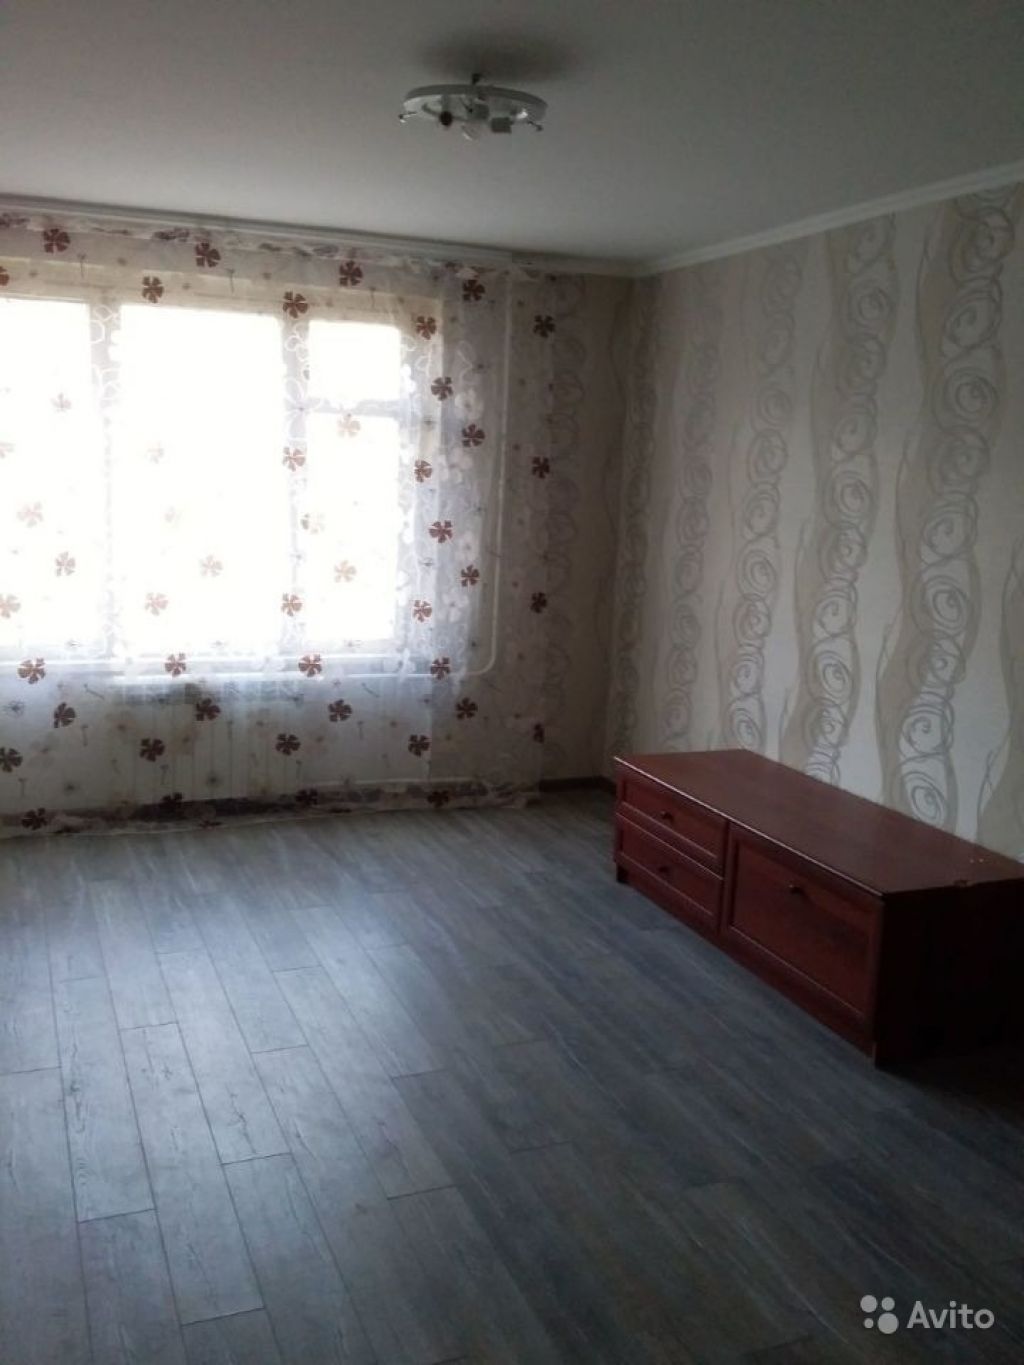 Сдам квартиру 1-к квартира 38 м² на 4 этаже 12-этажного панельного дома в Москве. Фото 1